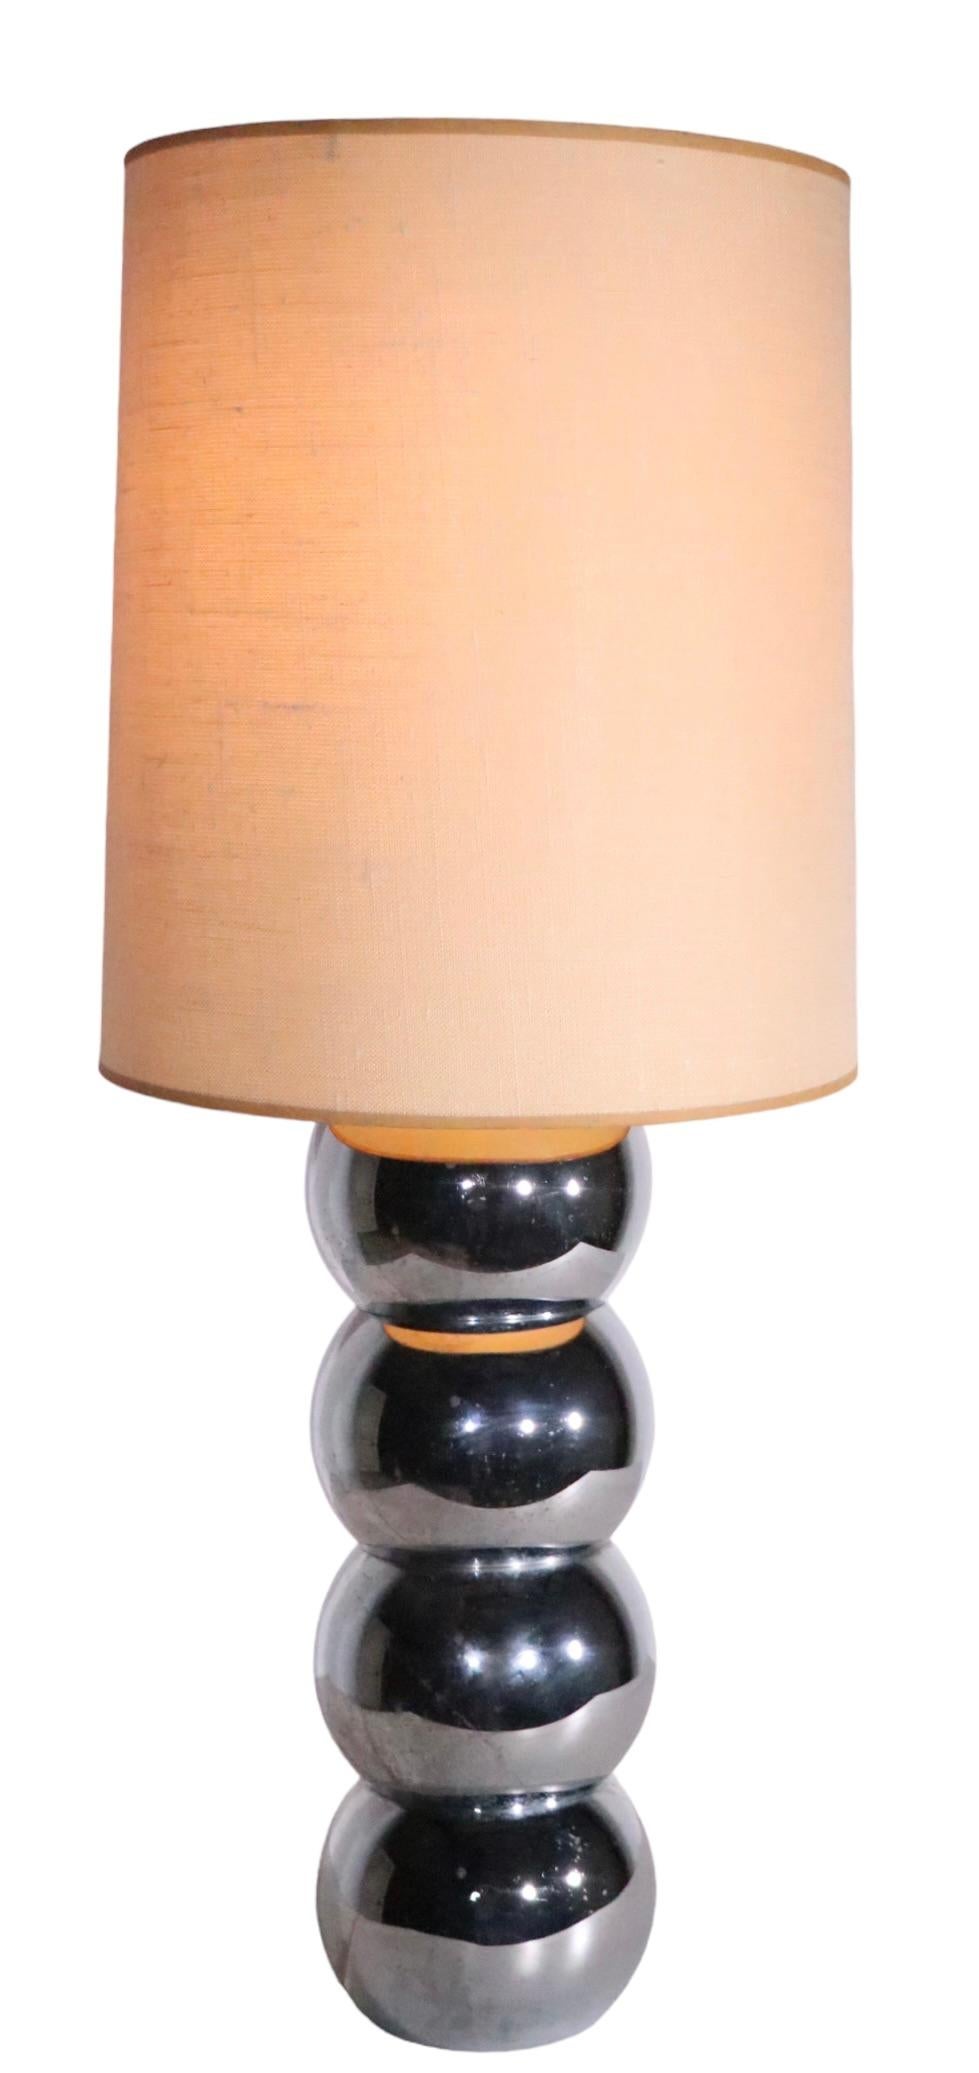 Klassisches Chrom  Tischlampe mit gestapelten Kugeln von George Kovacs, ca. 1970er Jahre. Dieses Exemplar befindet sich in einem sehr guten, sauberen und funktionstüchtigen Originalzustand, der nur leichte kosmetische Abnutzungserscheinungen